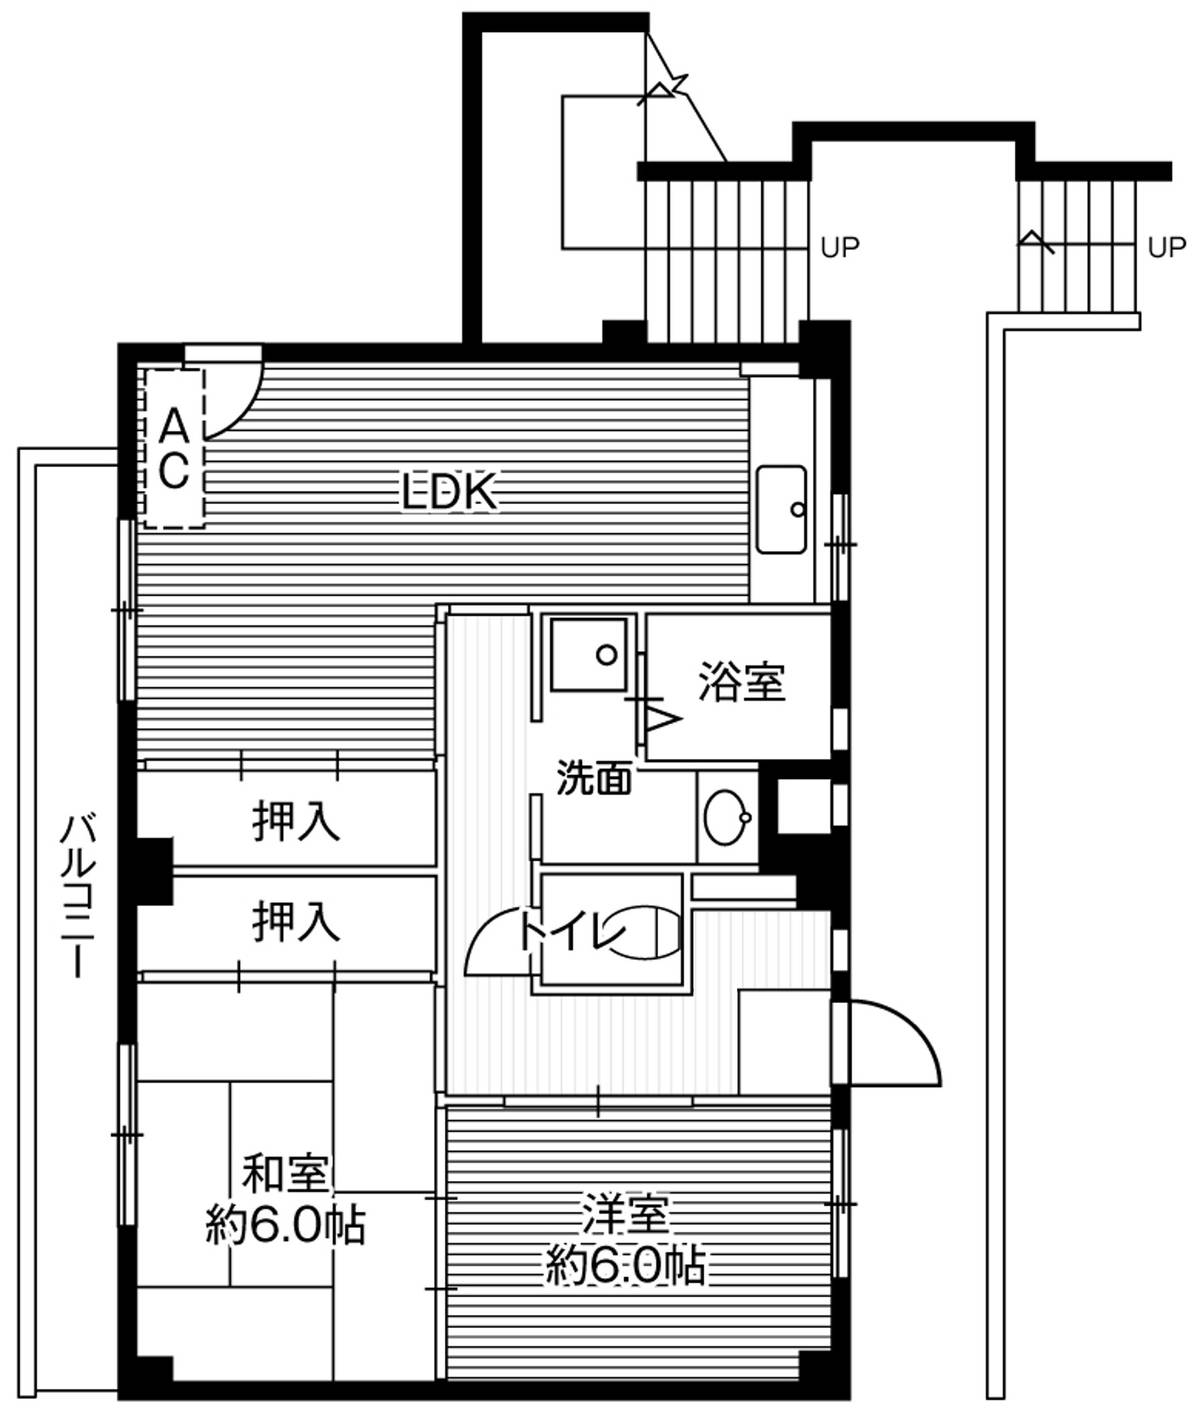 2LDK floorplan of Village House Akita in Akiruno-shi